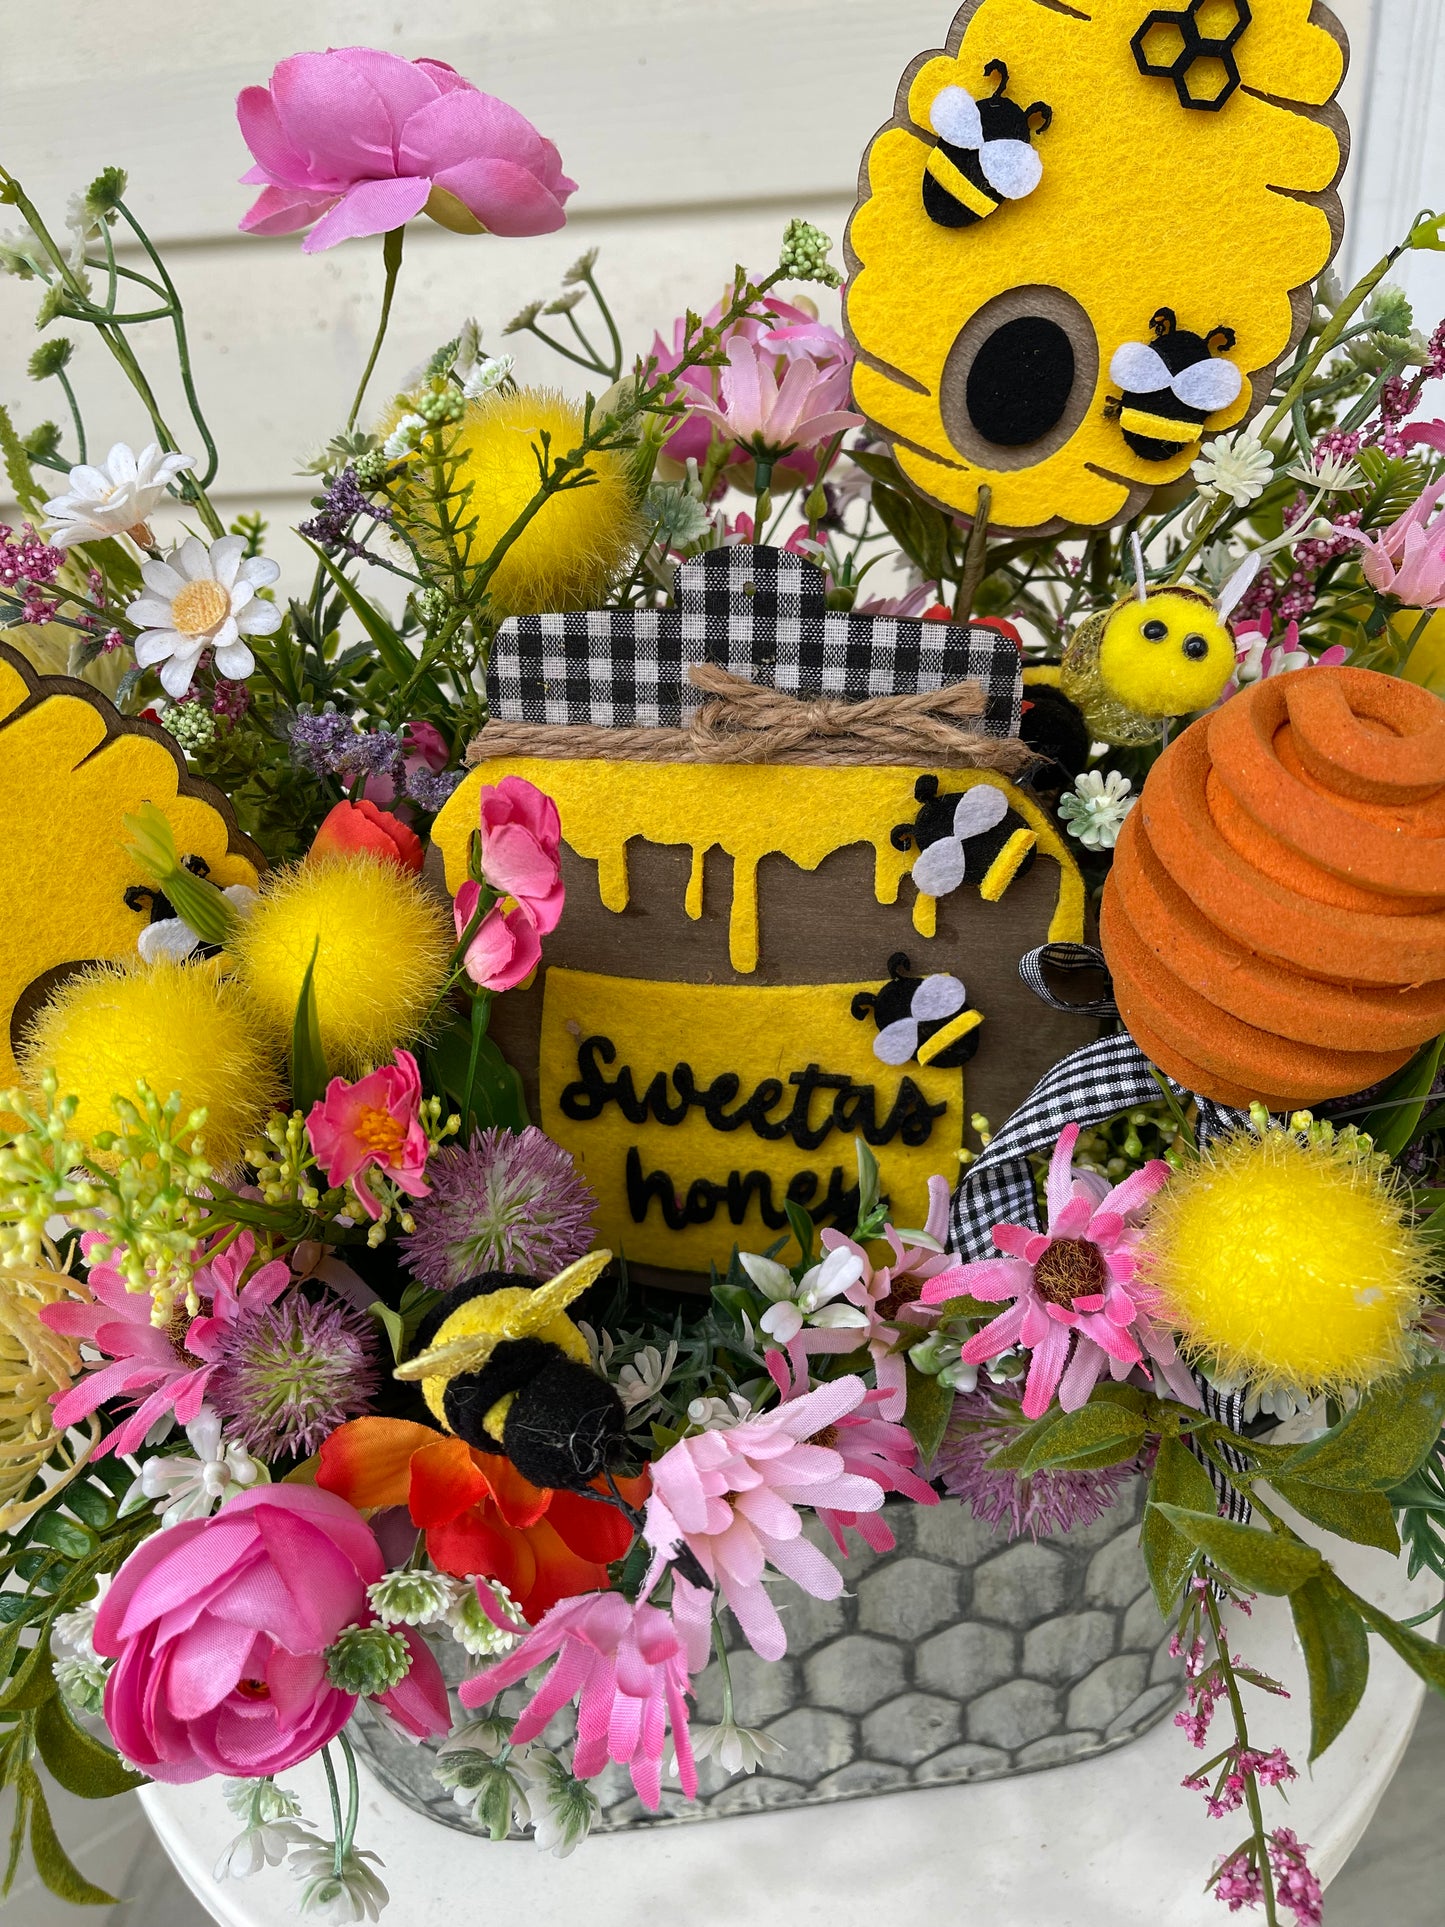 Honeybee centerpiece